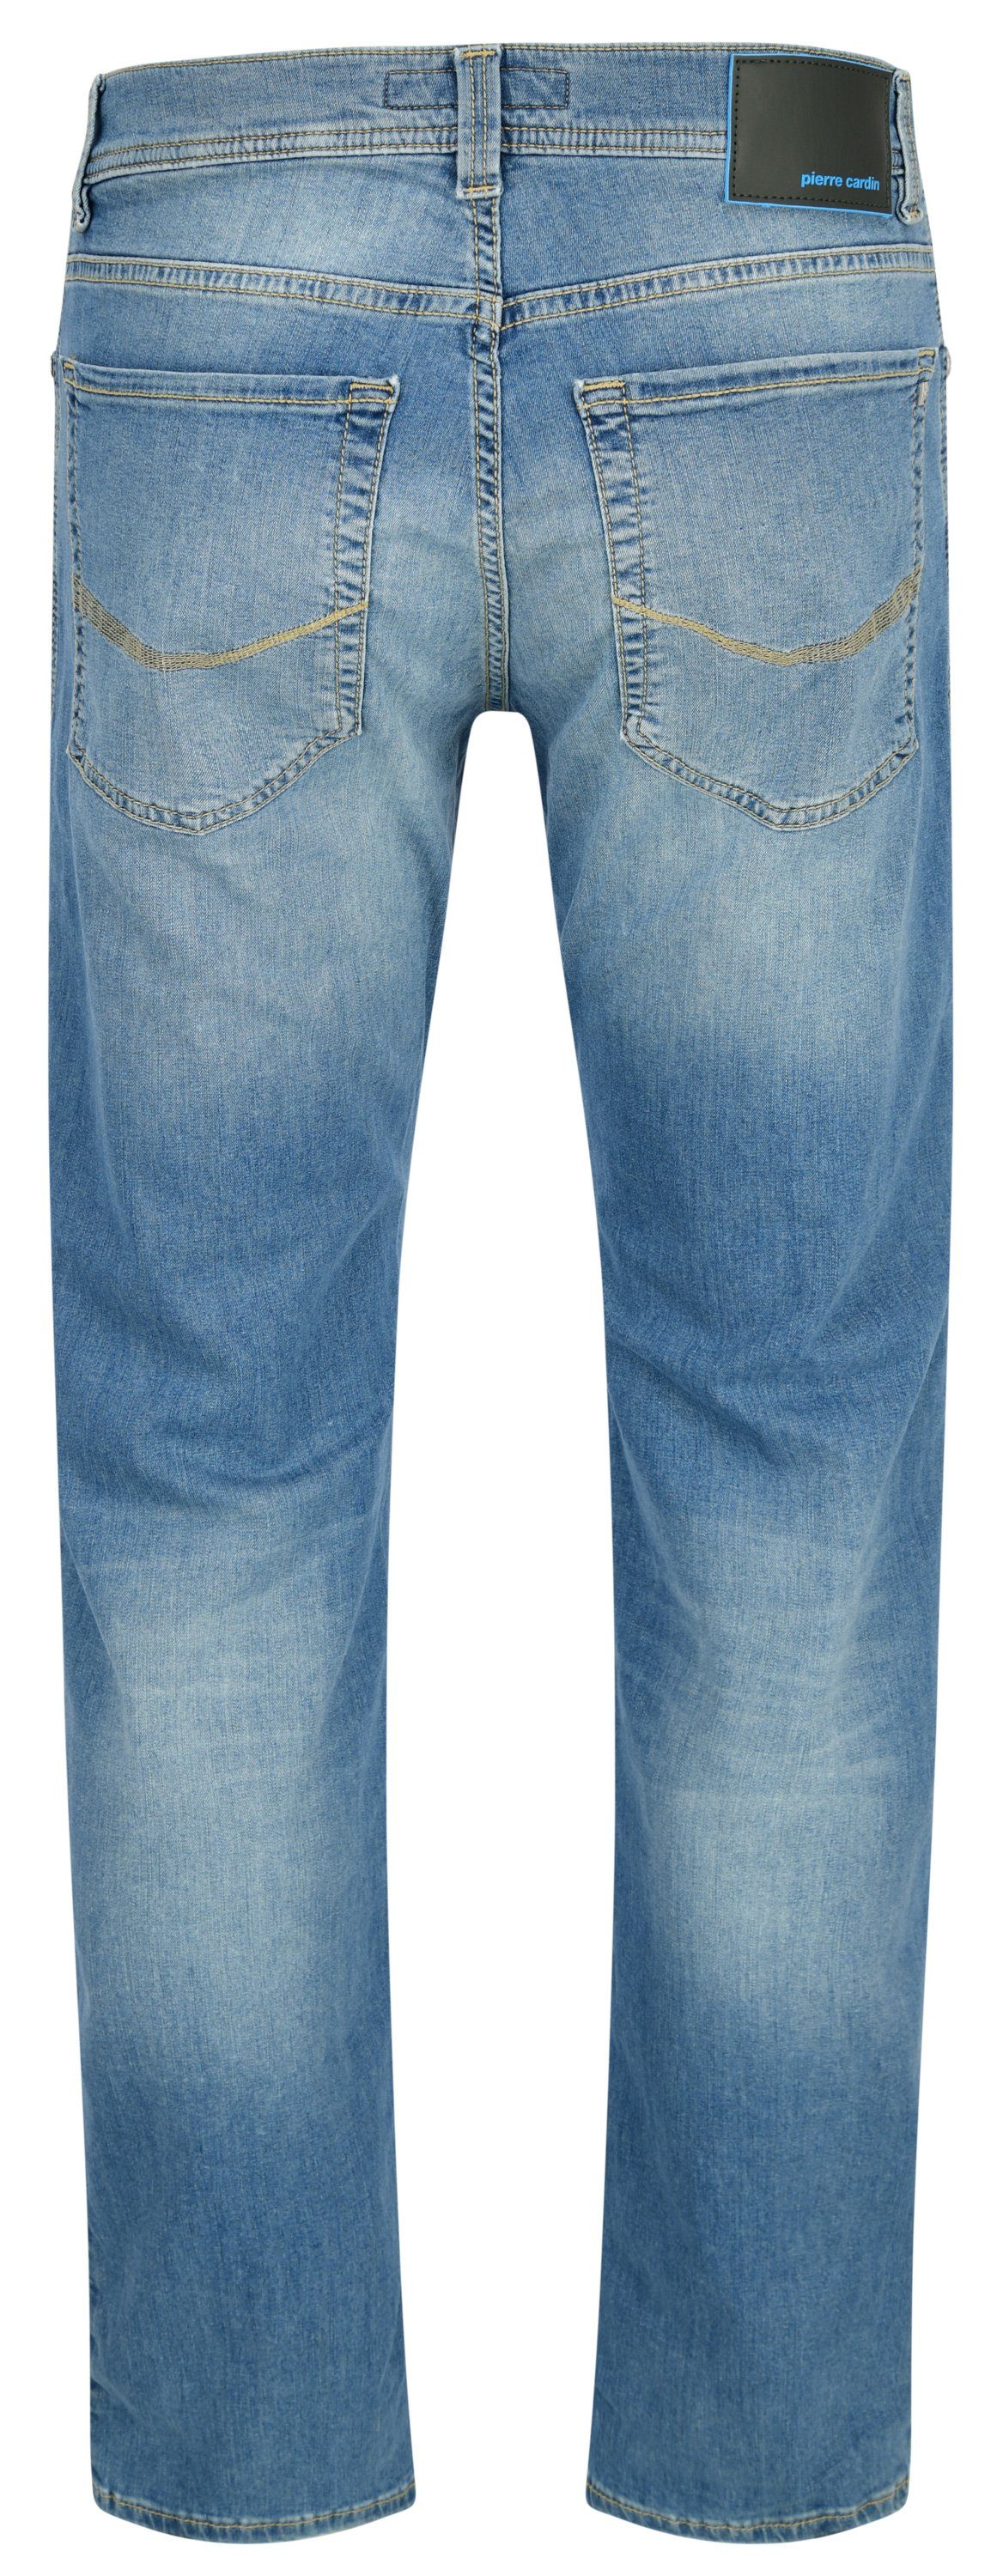 Pierre Cardin 5-Pocket-Jeans light buffies blue 8021.6844 - used 34510 CARDIN TAPERED LYON PIERRE